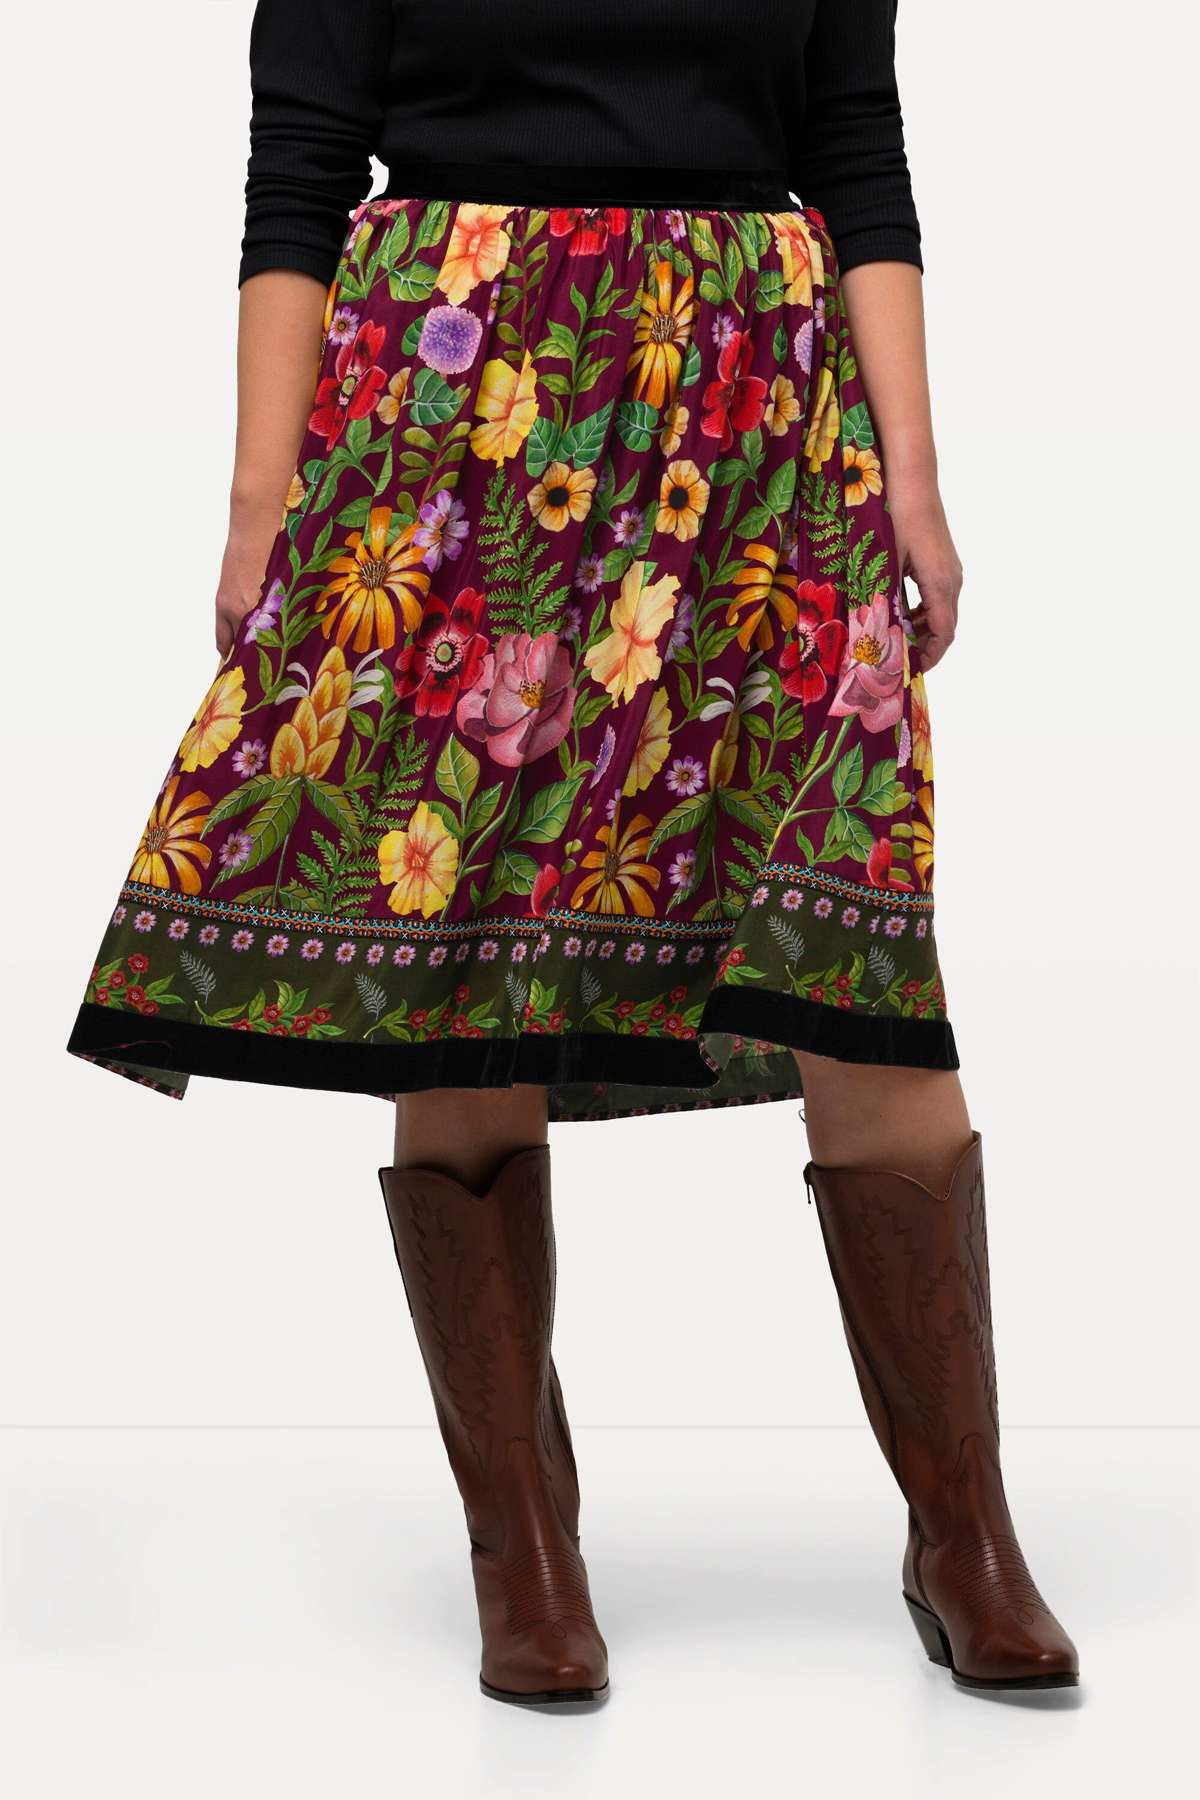 Кожаная юбка-юбка с цветами А-силуэта, бархатный эластичный пояс, бархатная подол